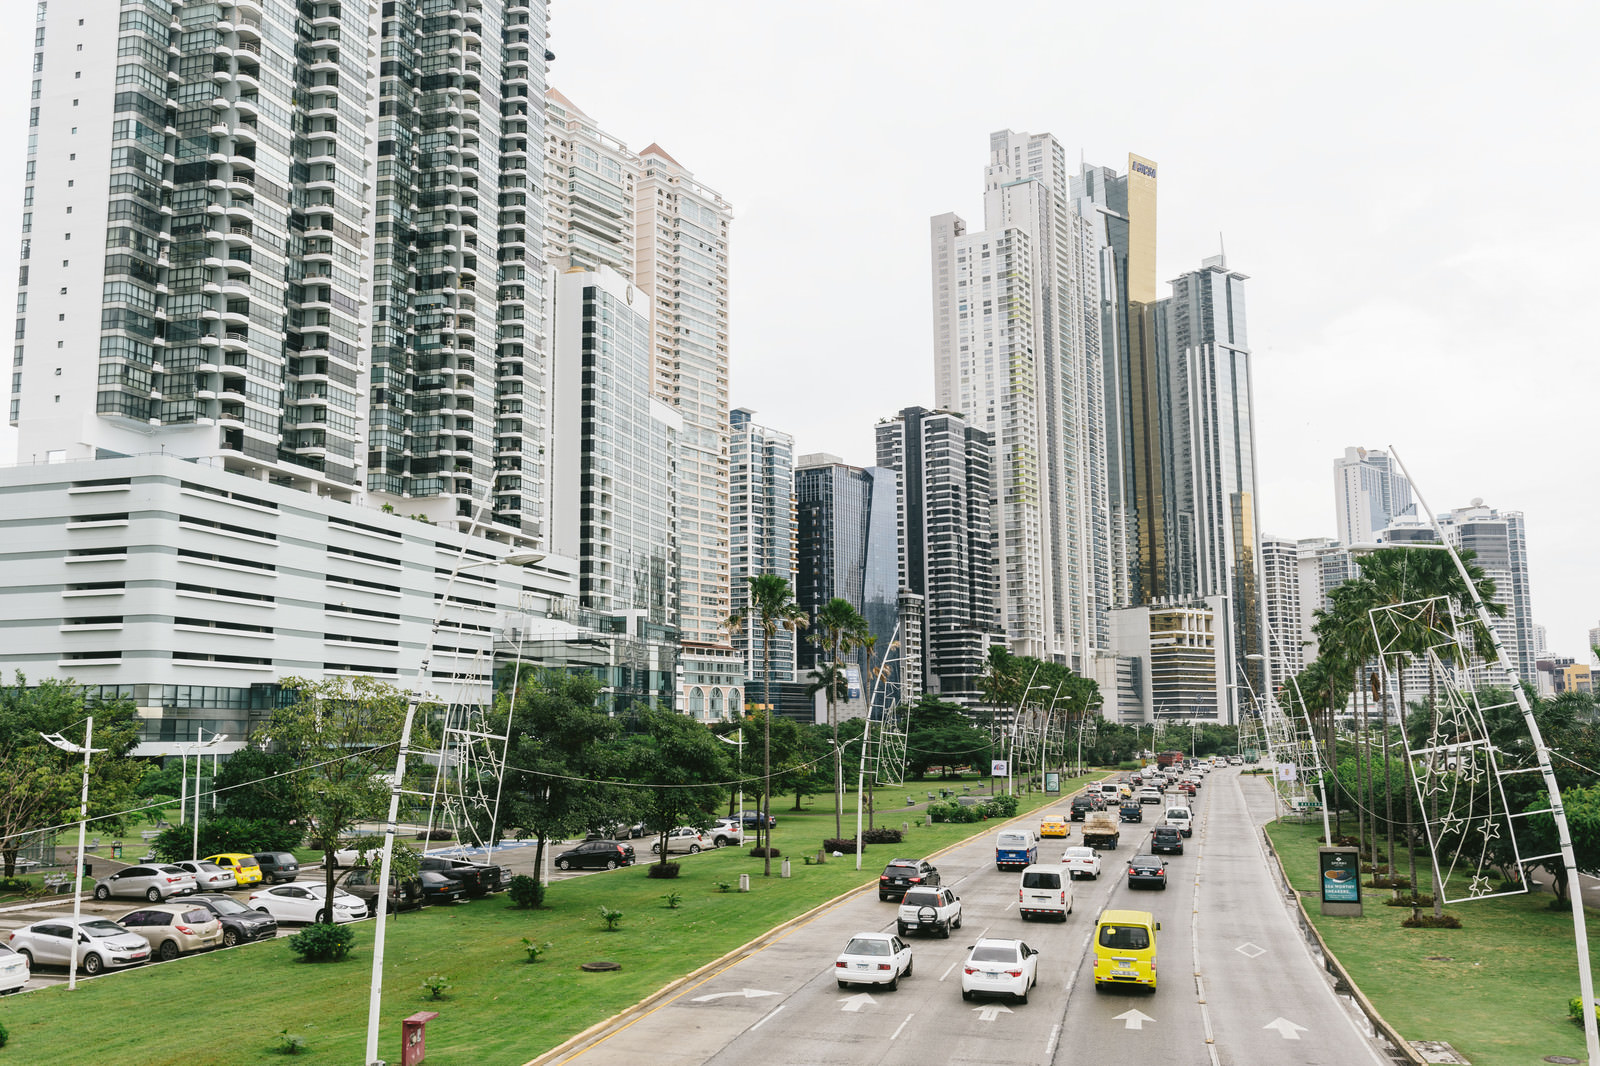 「高層マンションが立ち並ぶパナマの都市部 | フリー素材のぱくたそ」の写真